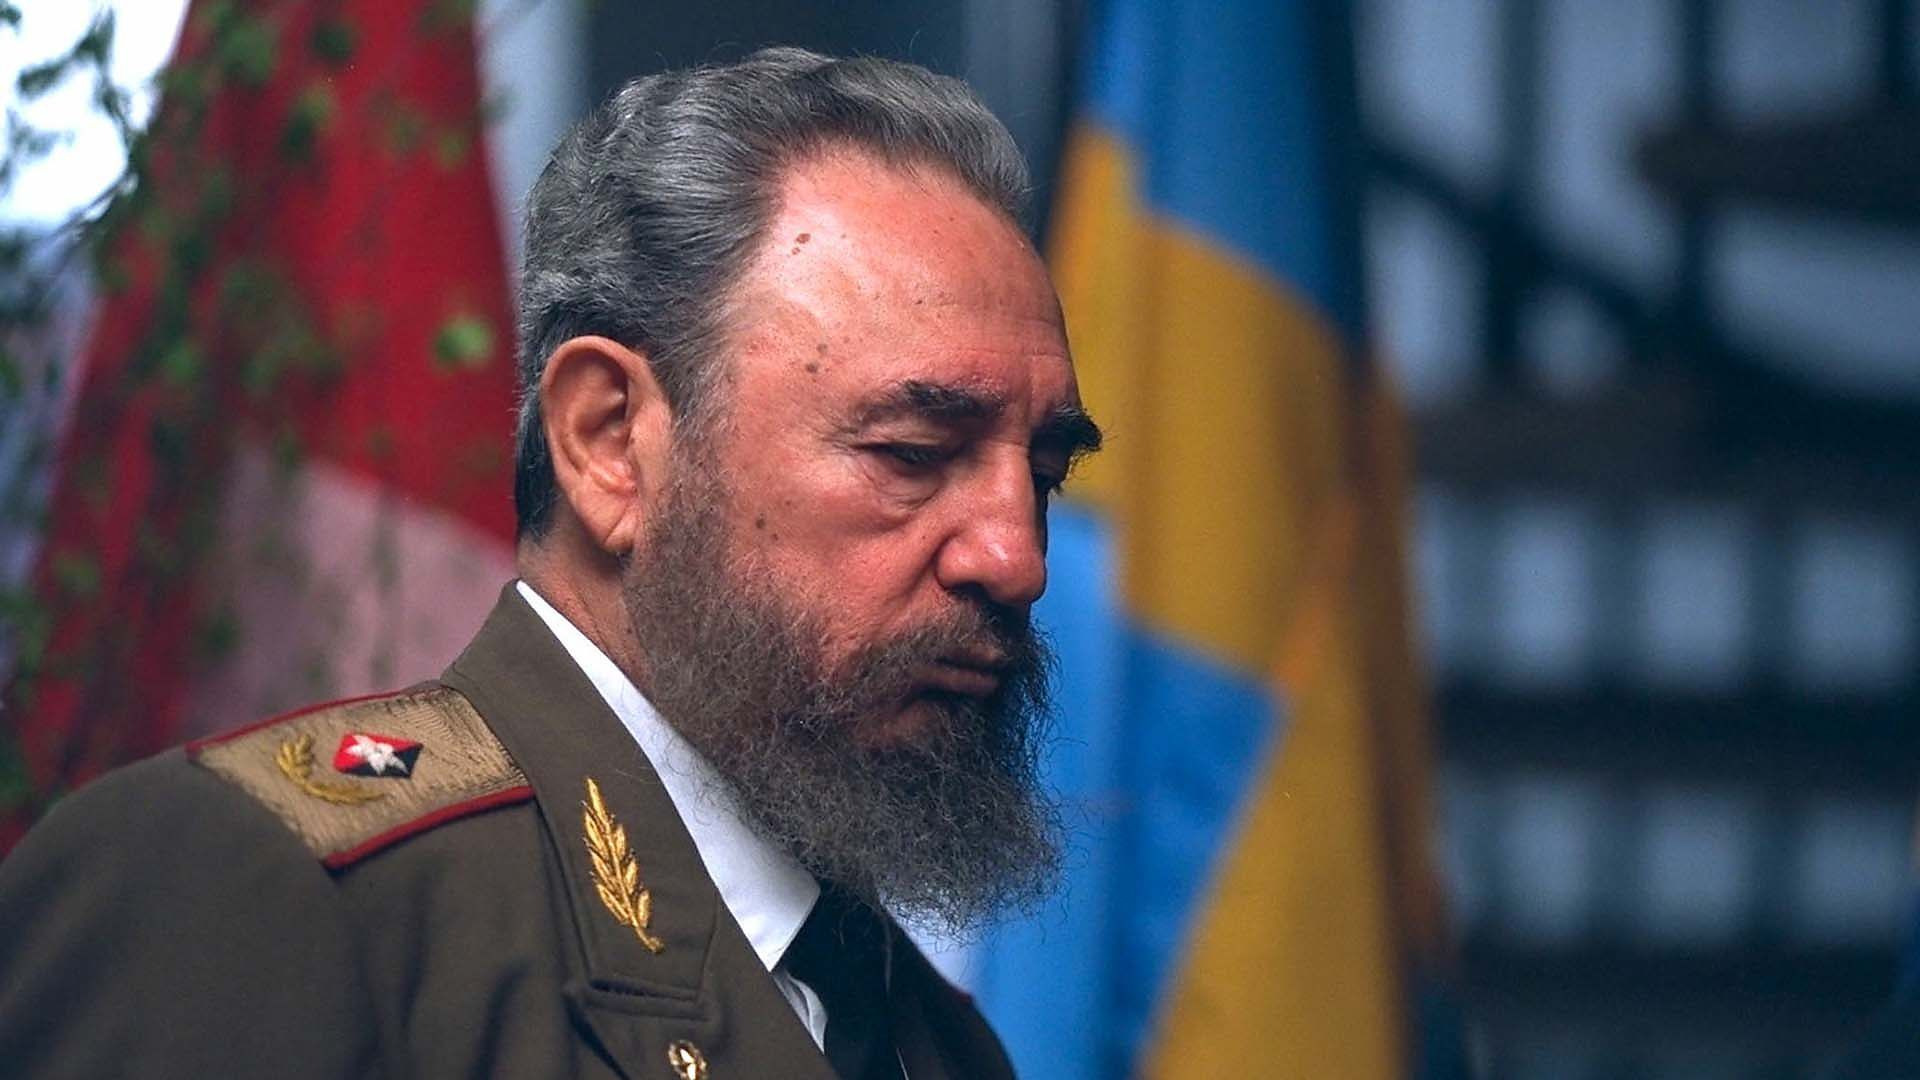 Show Cuba: Castro vs the World